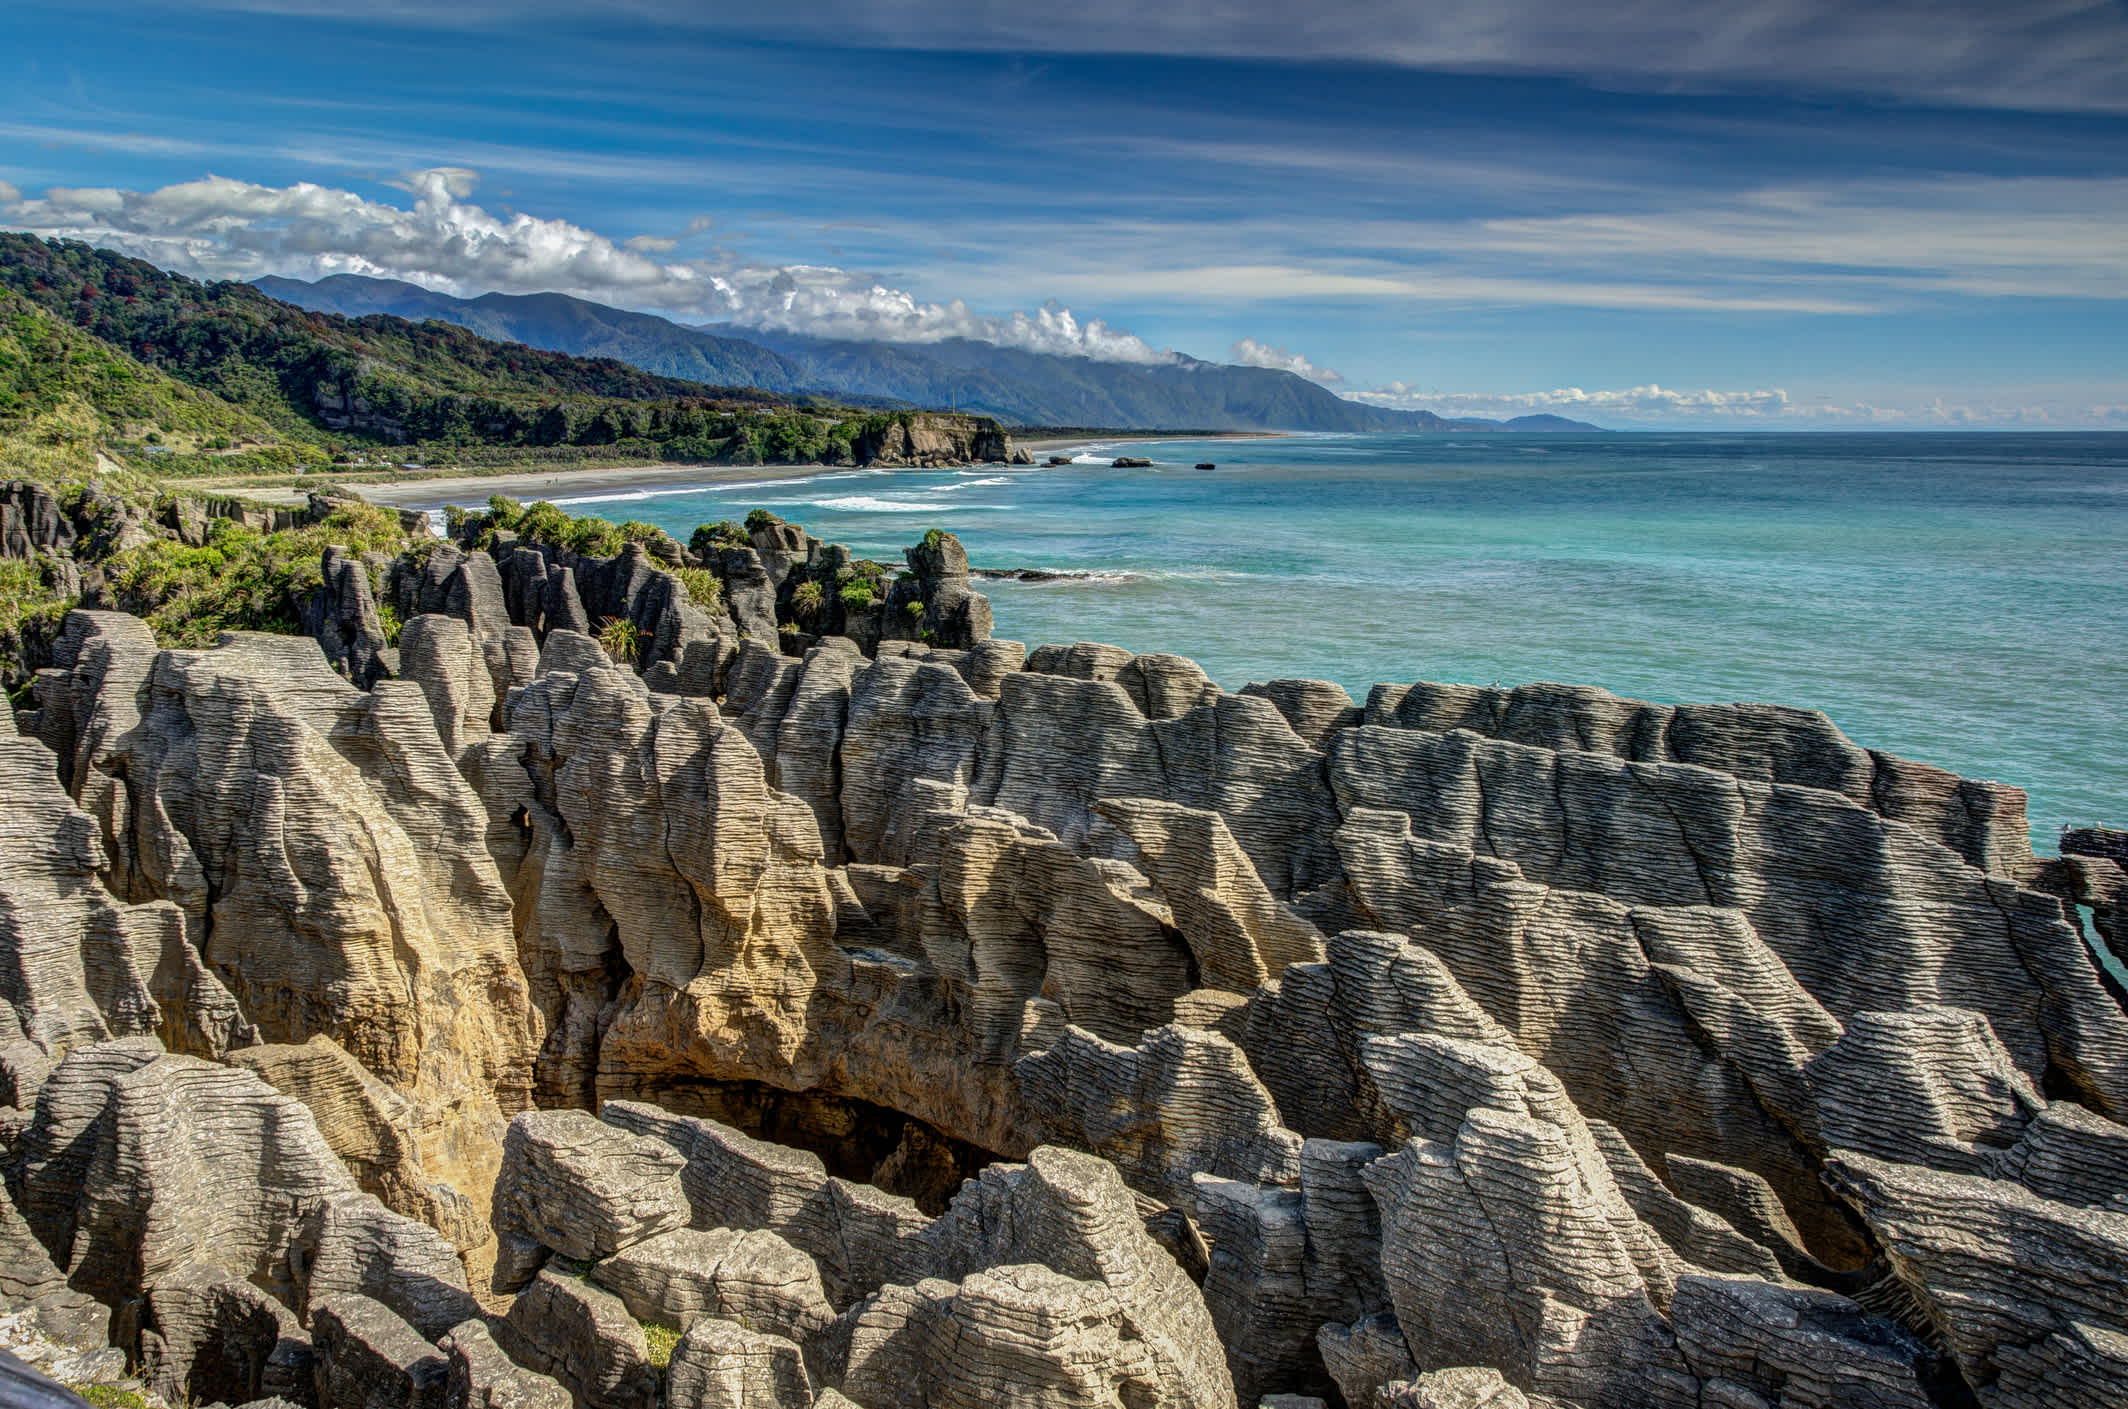 Découvrez les plages rocheuses de Punakaiki pendant votre séjour en Nouvelle-Zélande.